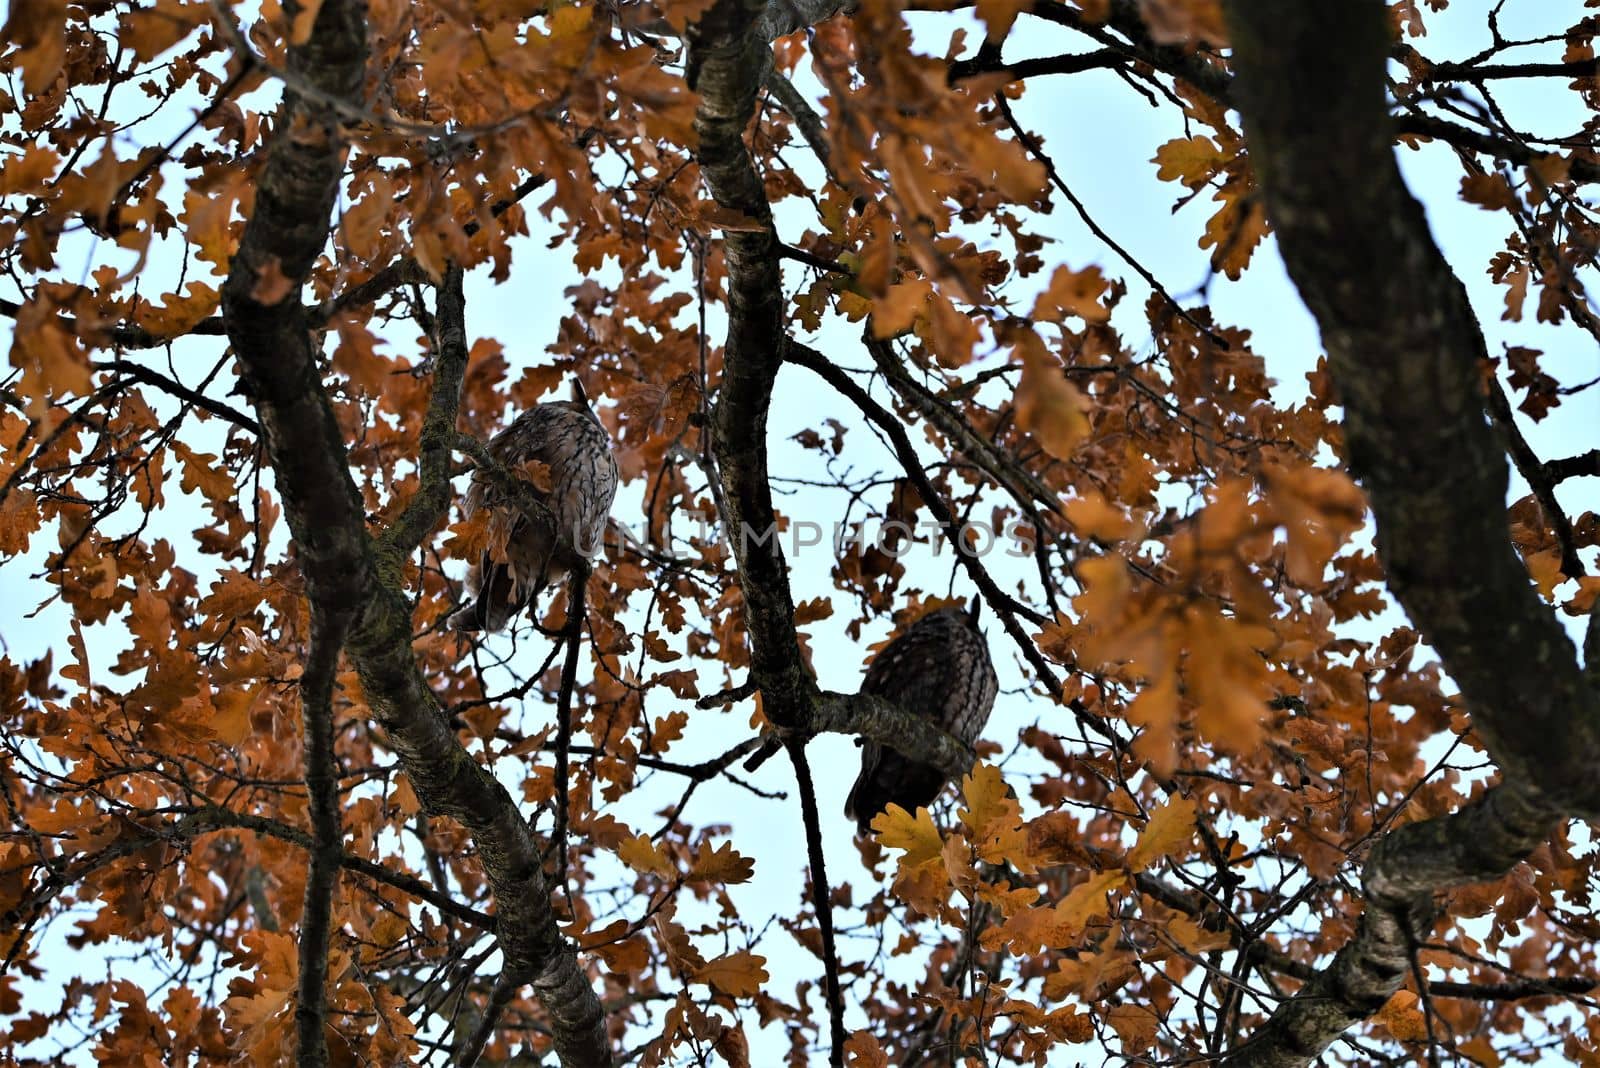 Two long eared owls in an oak tree by Luise123